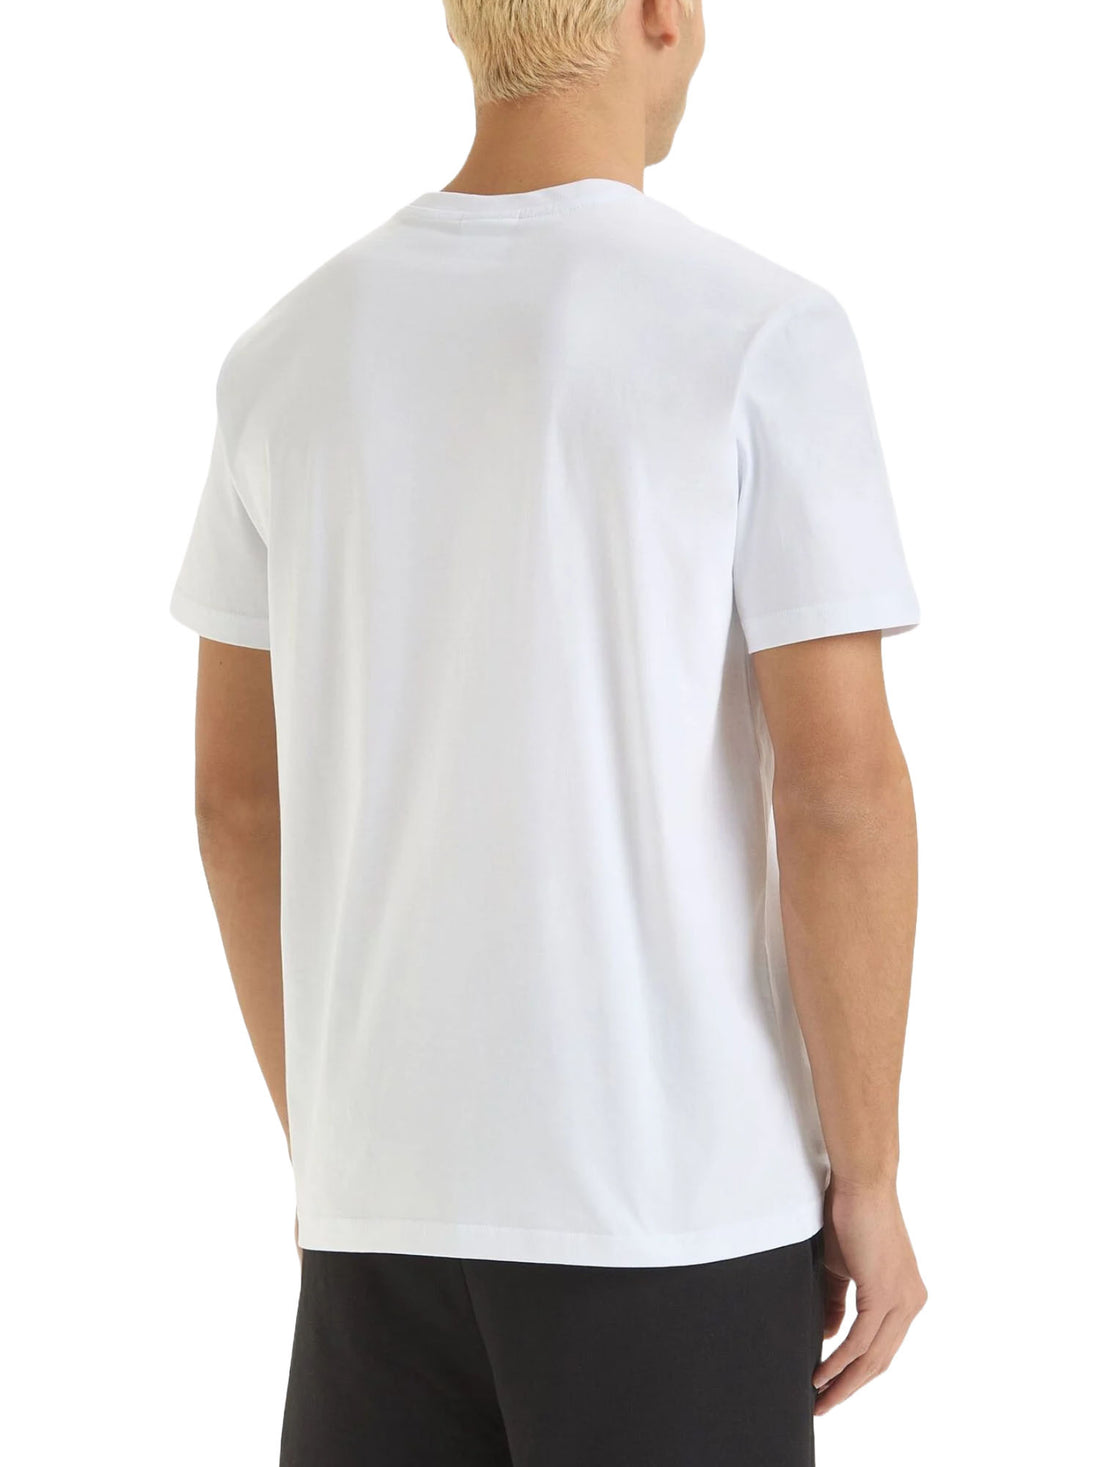 T-shirt Bianco Verde Diadora